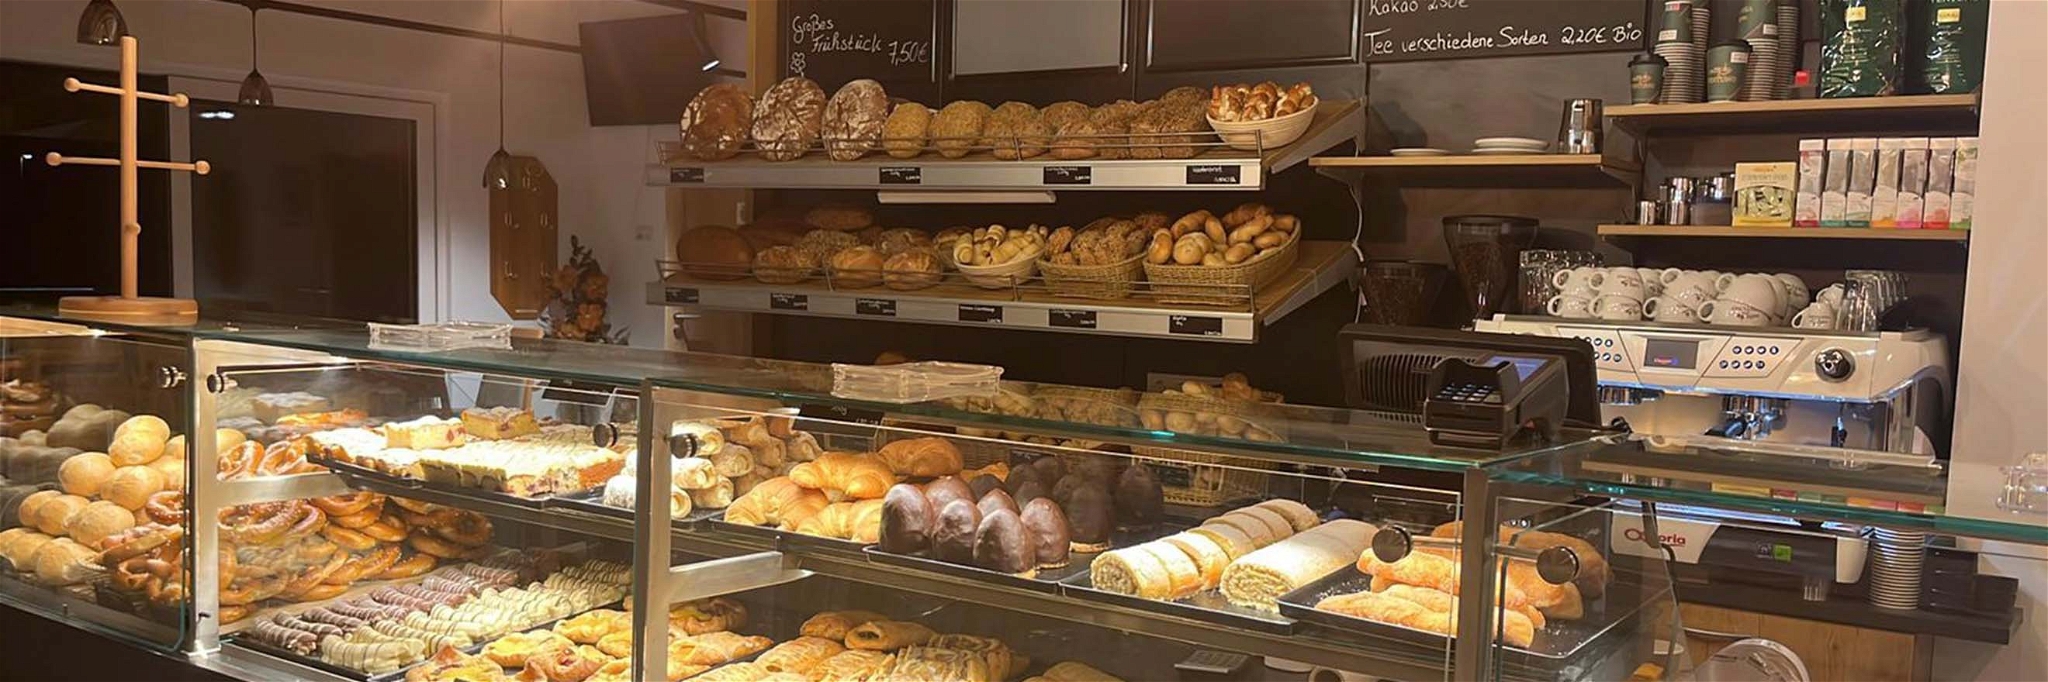 In der aktuellen Situation ist es für Bäckereien nicht leicht. Robert Schönhofer hat sich trotzdem getraut, eine eigene Landbäckerei zu eröffnen.